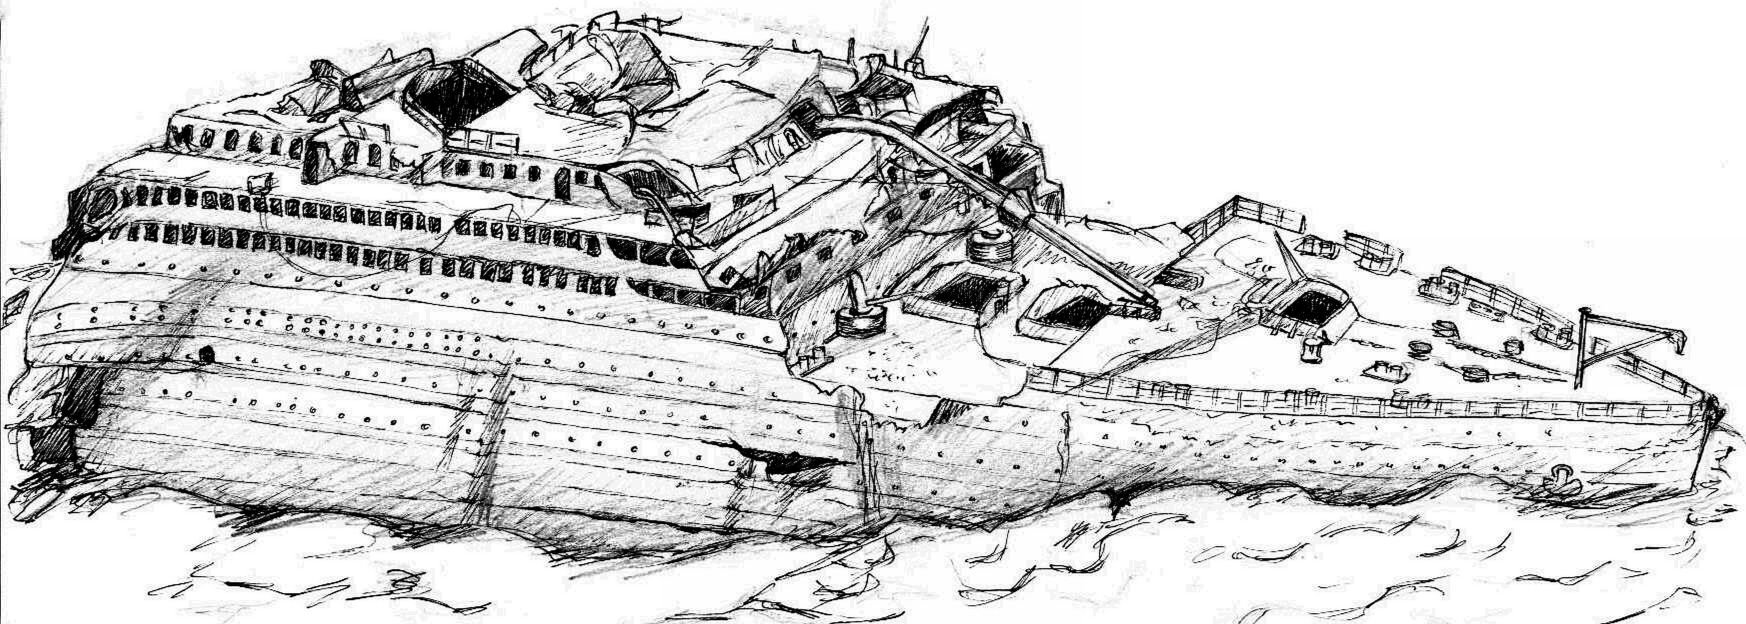 Титаник разлом #2